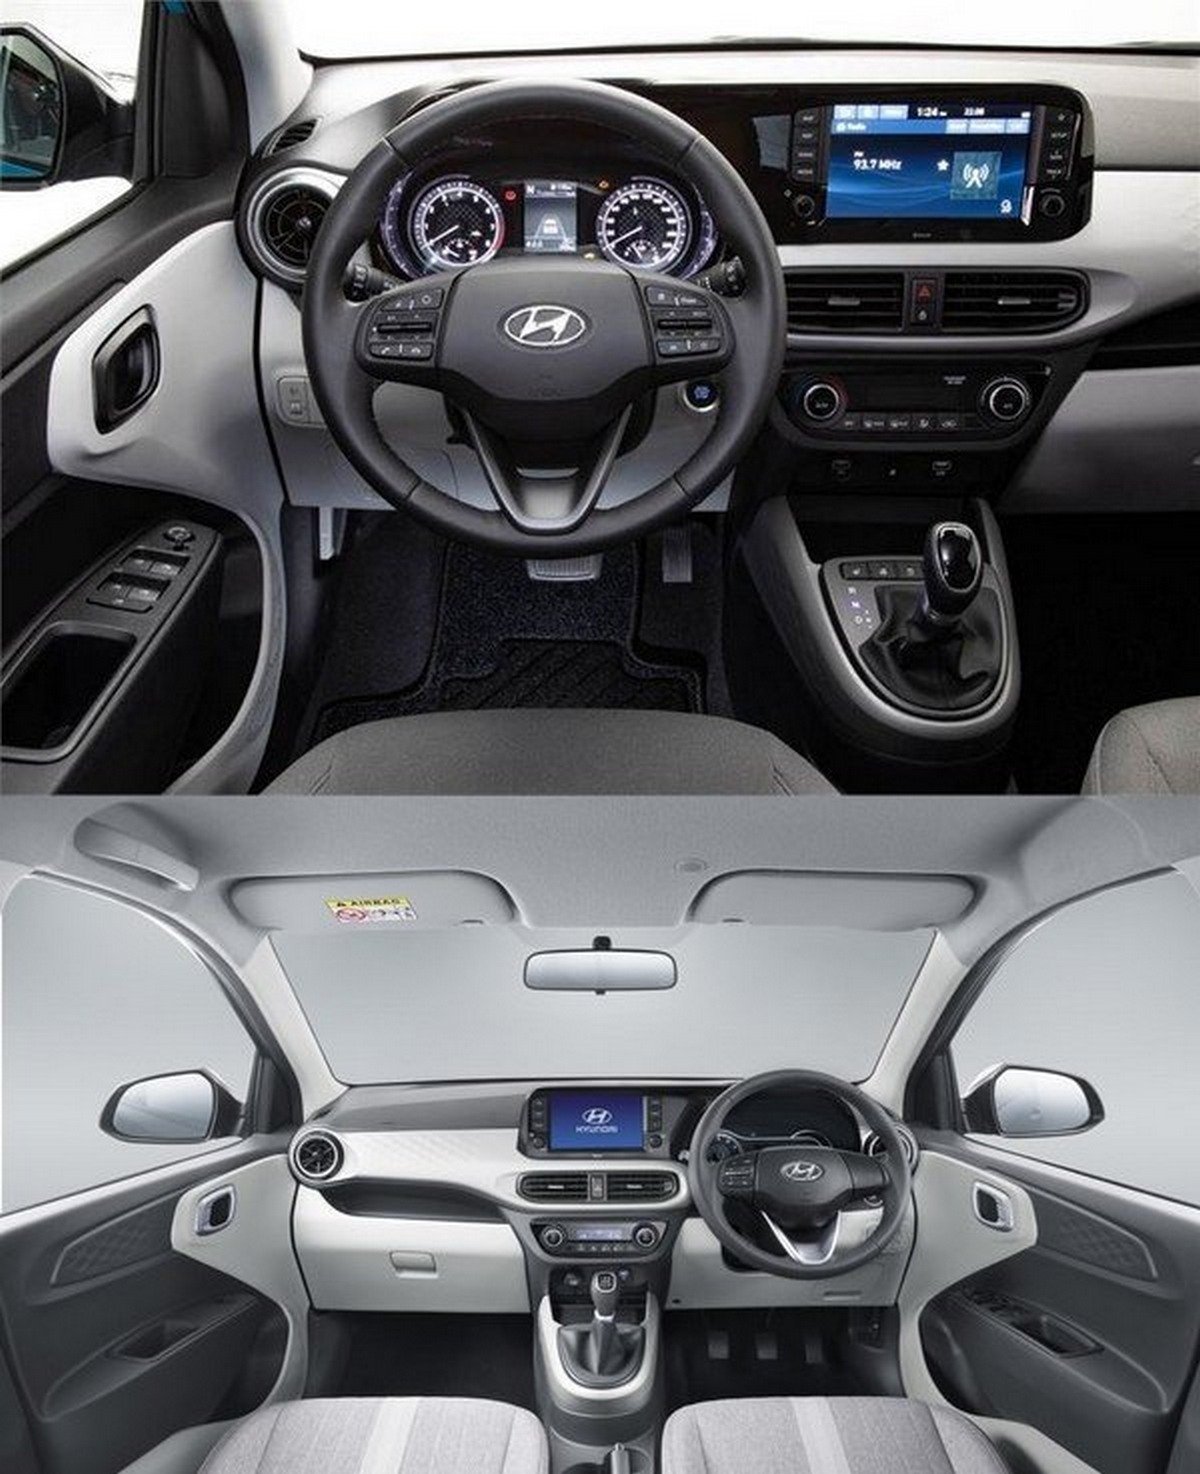 All New Grand i10 Nios Magna Model interior Photos What do you think   imdipayan Thanks to Meghna Hyundai Assam hyundai  Instagram